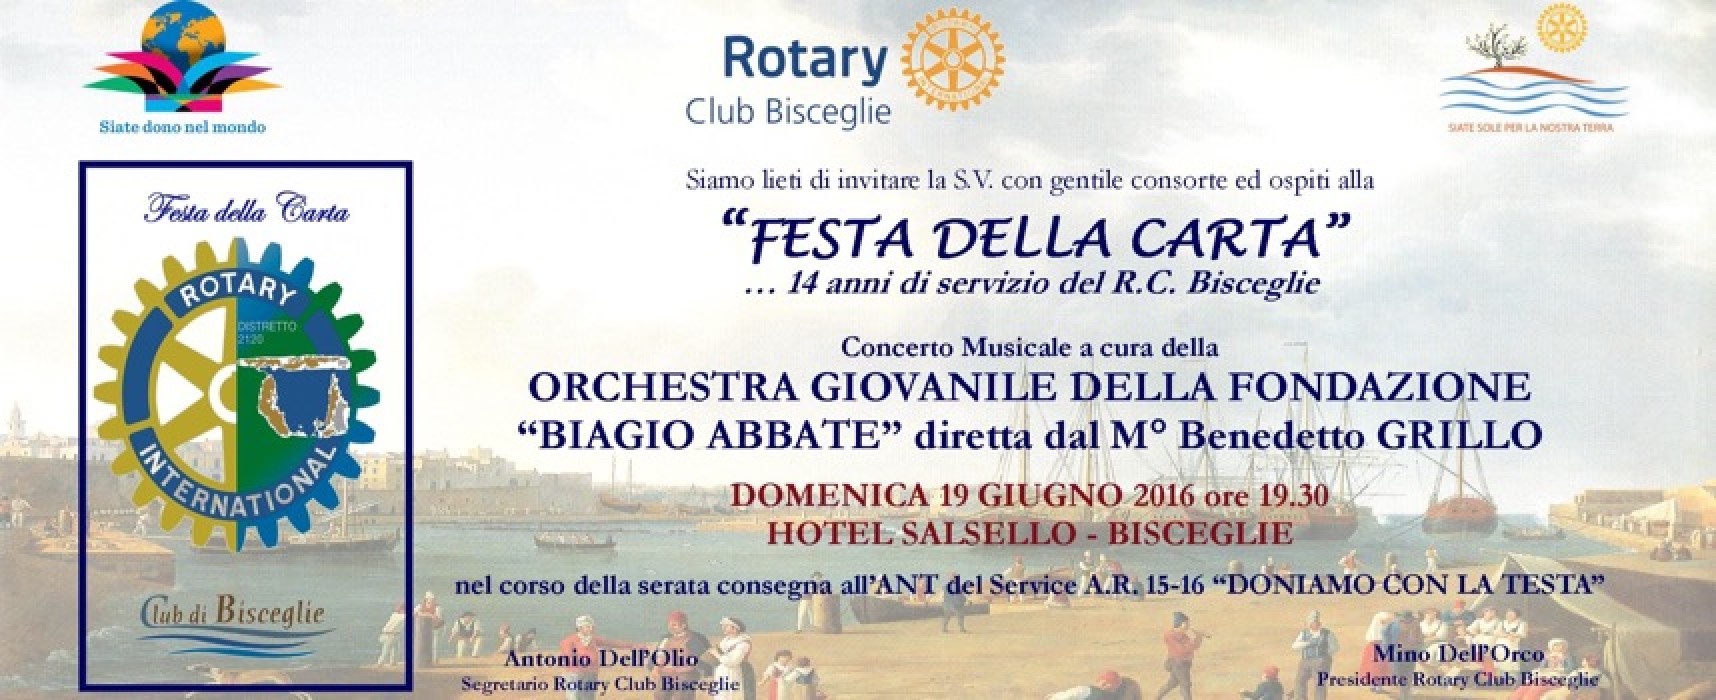 Il Rotary Club Bisceglie festeggia stasera i 14 anni con la festa della Carta